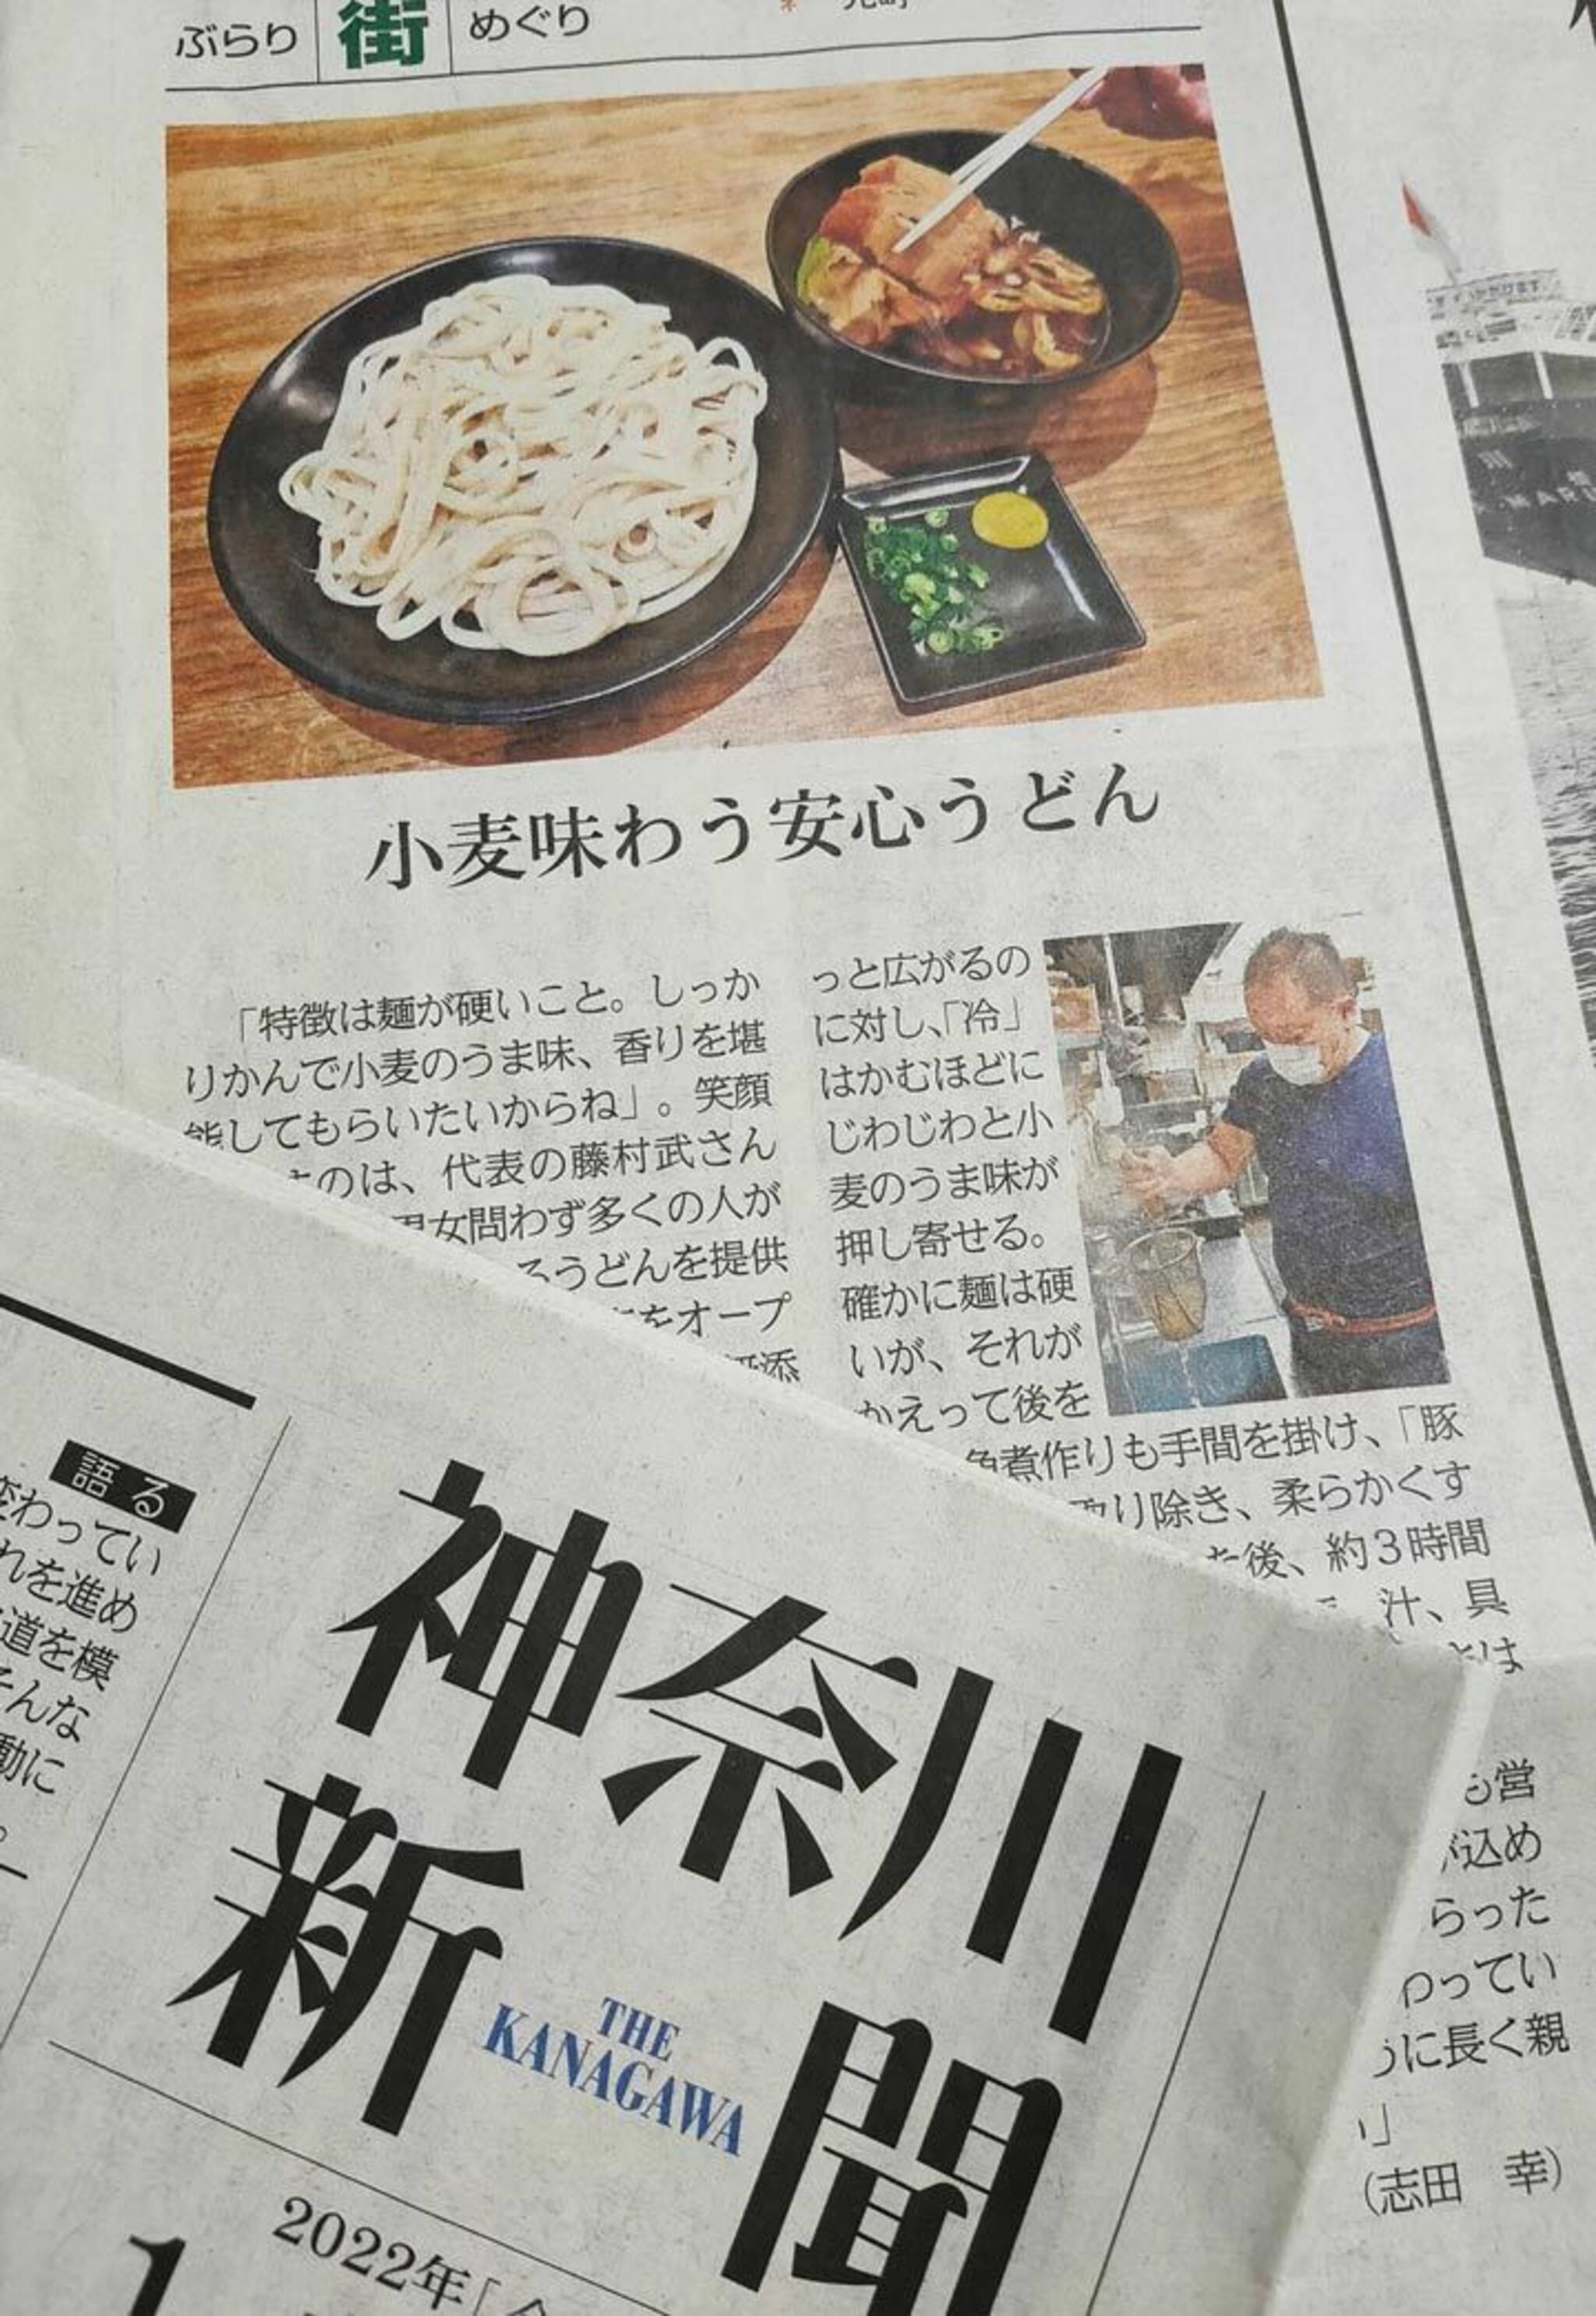 かばのおうどん 横浜元町本店からのお知らせ(神奈川新聞で、かばのおうどんが紹介されました！)に関する写真